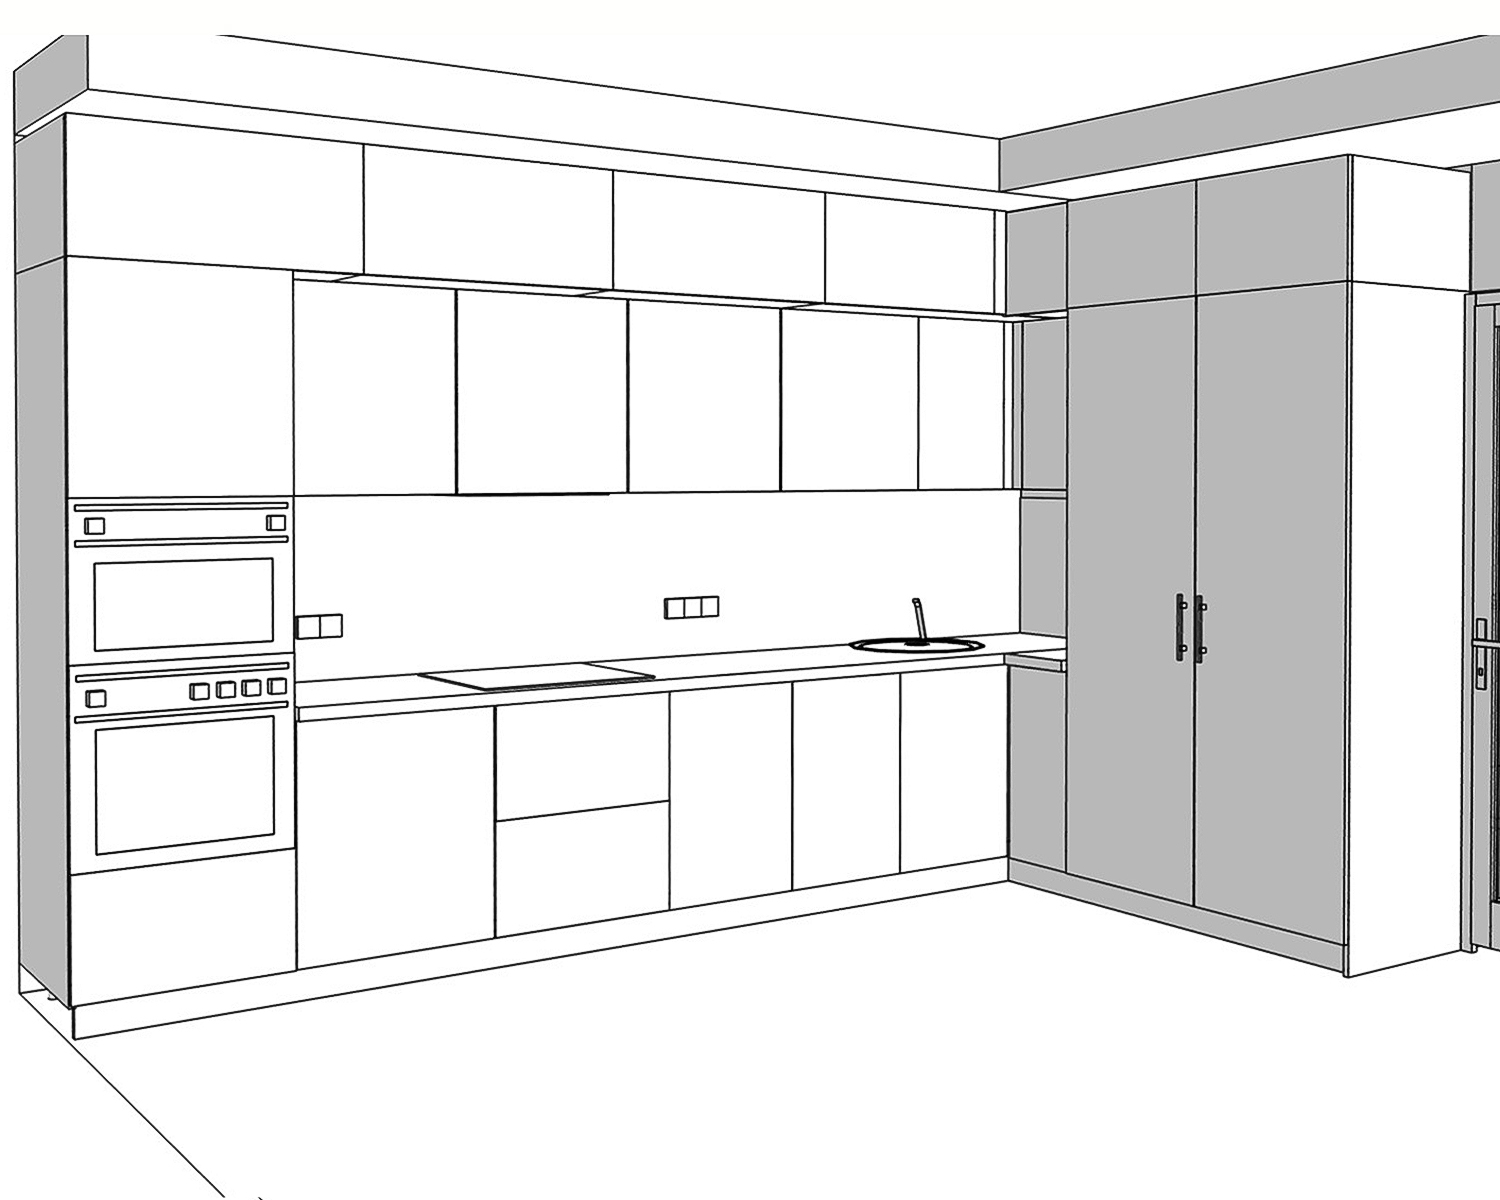 Проект кухни — идеи для правильной планировки пространства